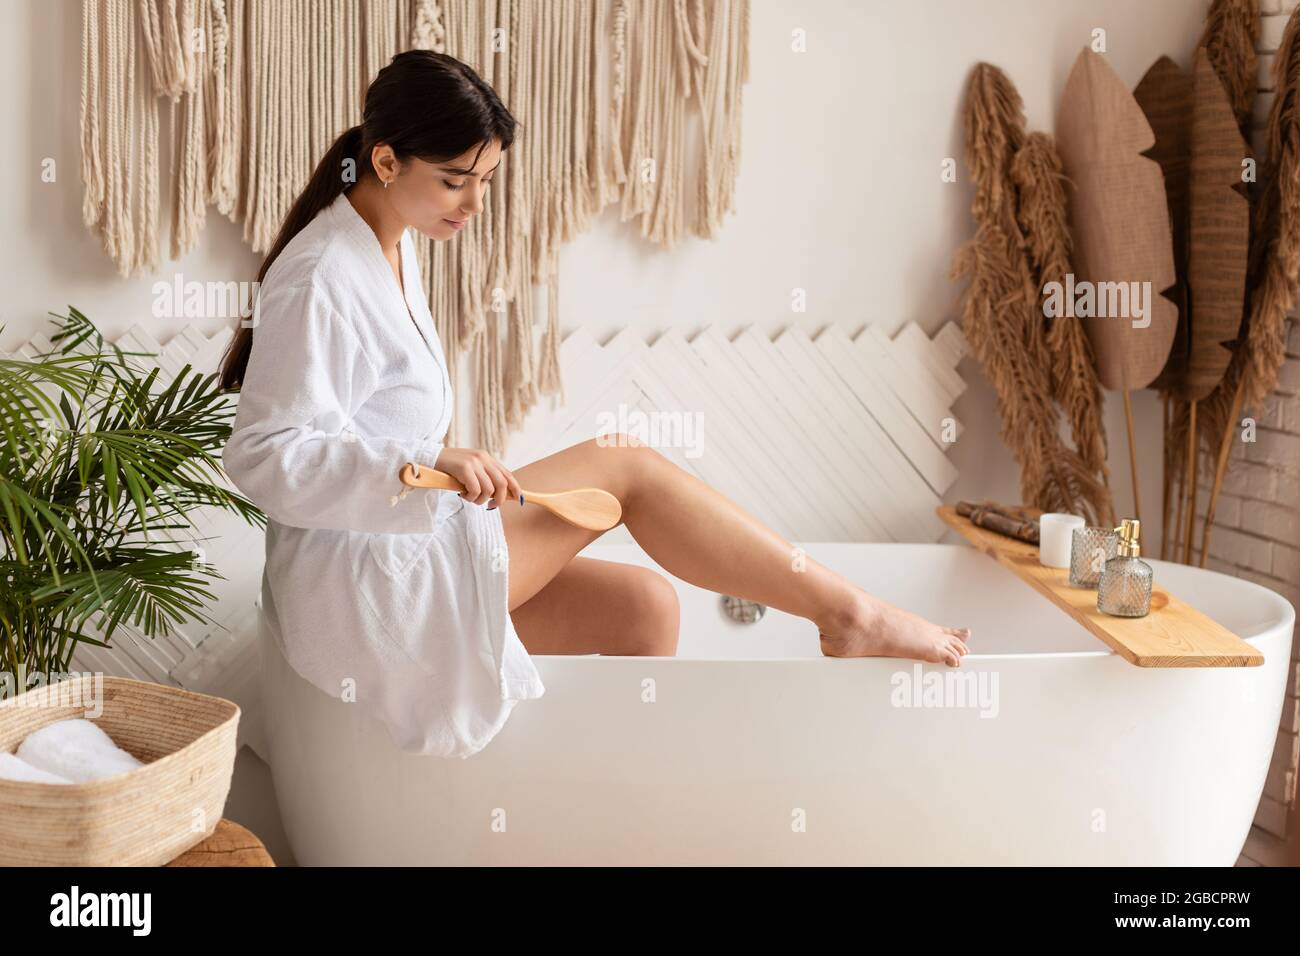 Lady Dry Bürsten Beine Machen Massage Für Cellulite Prävention In  Innenräumen Stockfotografie - Alamy